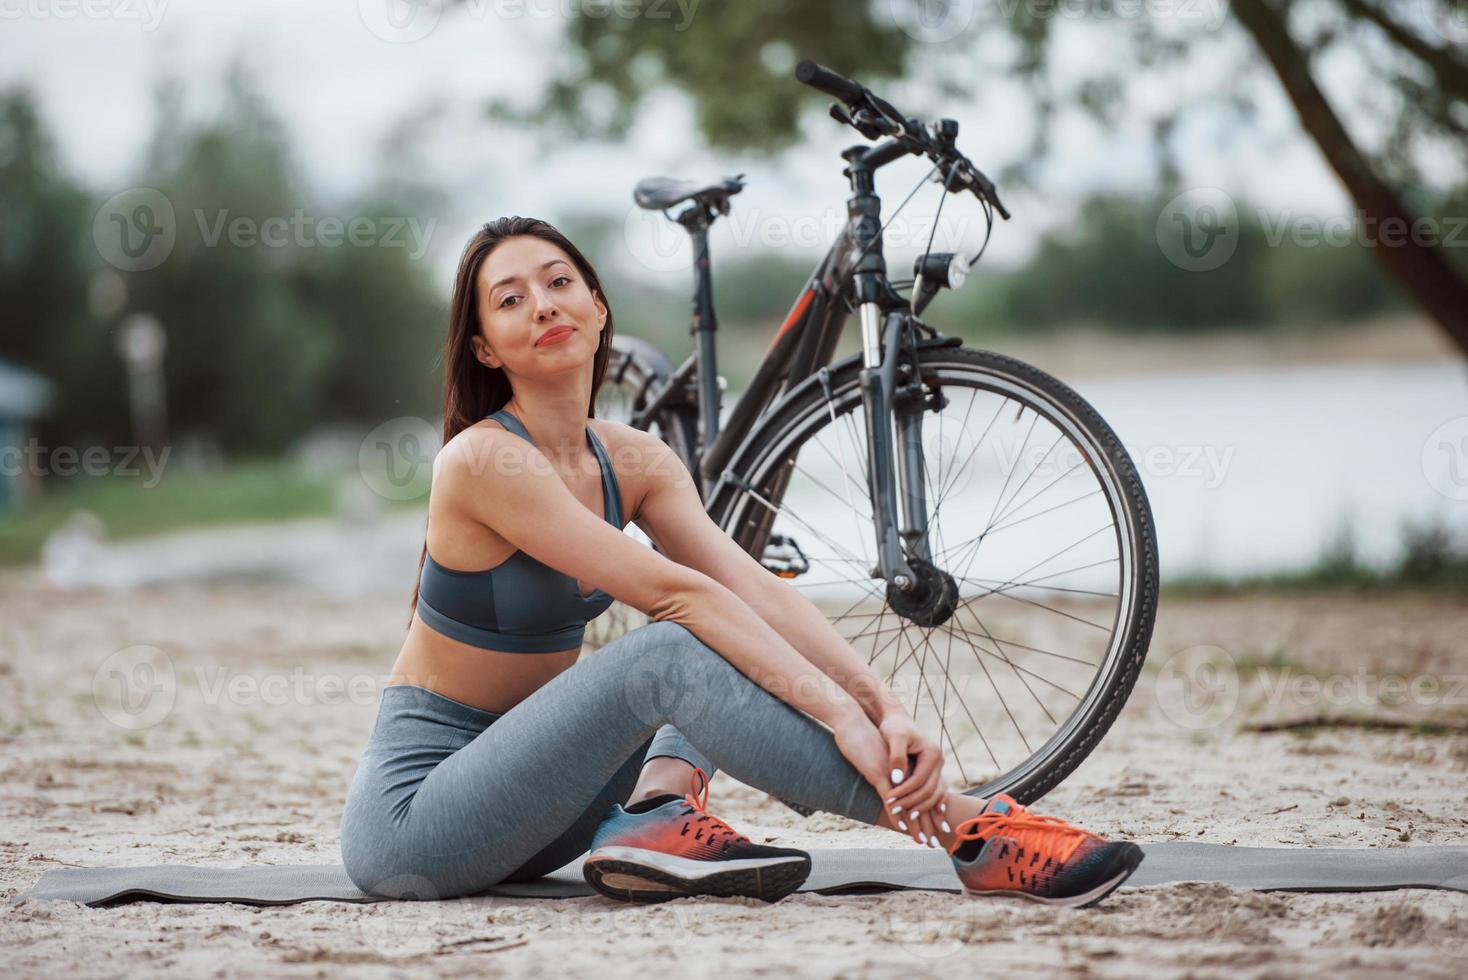 relajado y satisfecho. ciclista femenina con buena forma corporal sentada cerca de su bicicleta en la playa durante el día foto